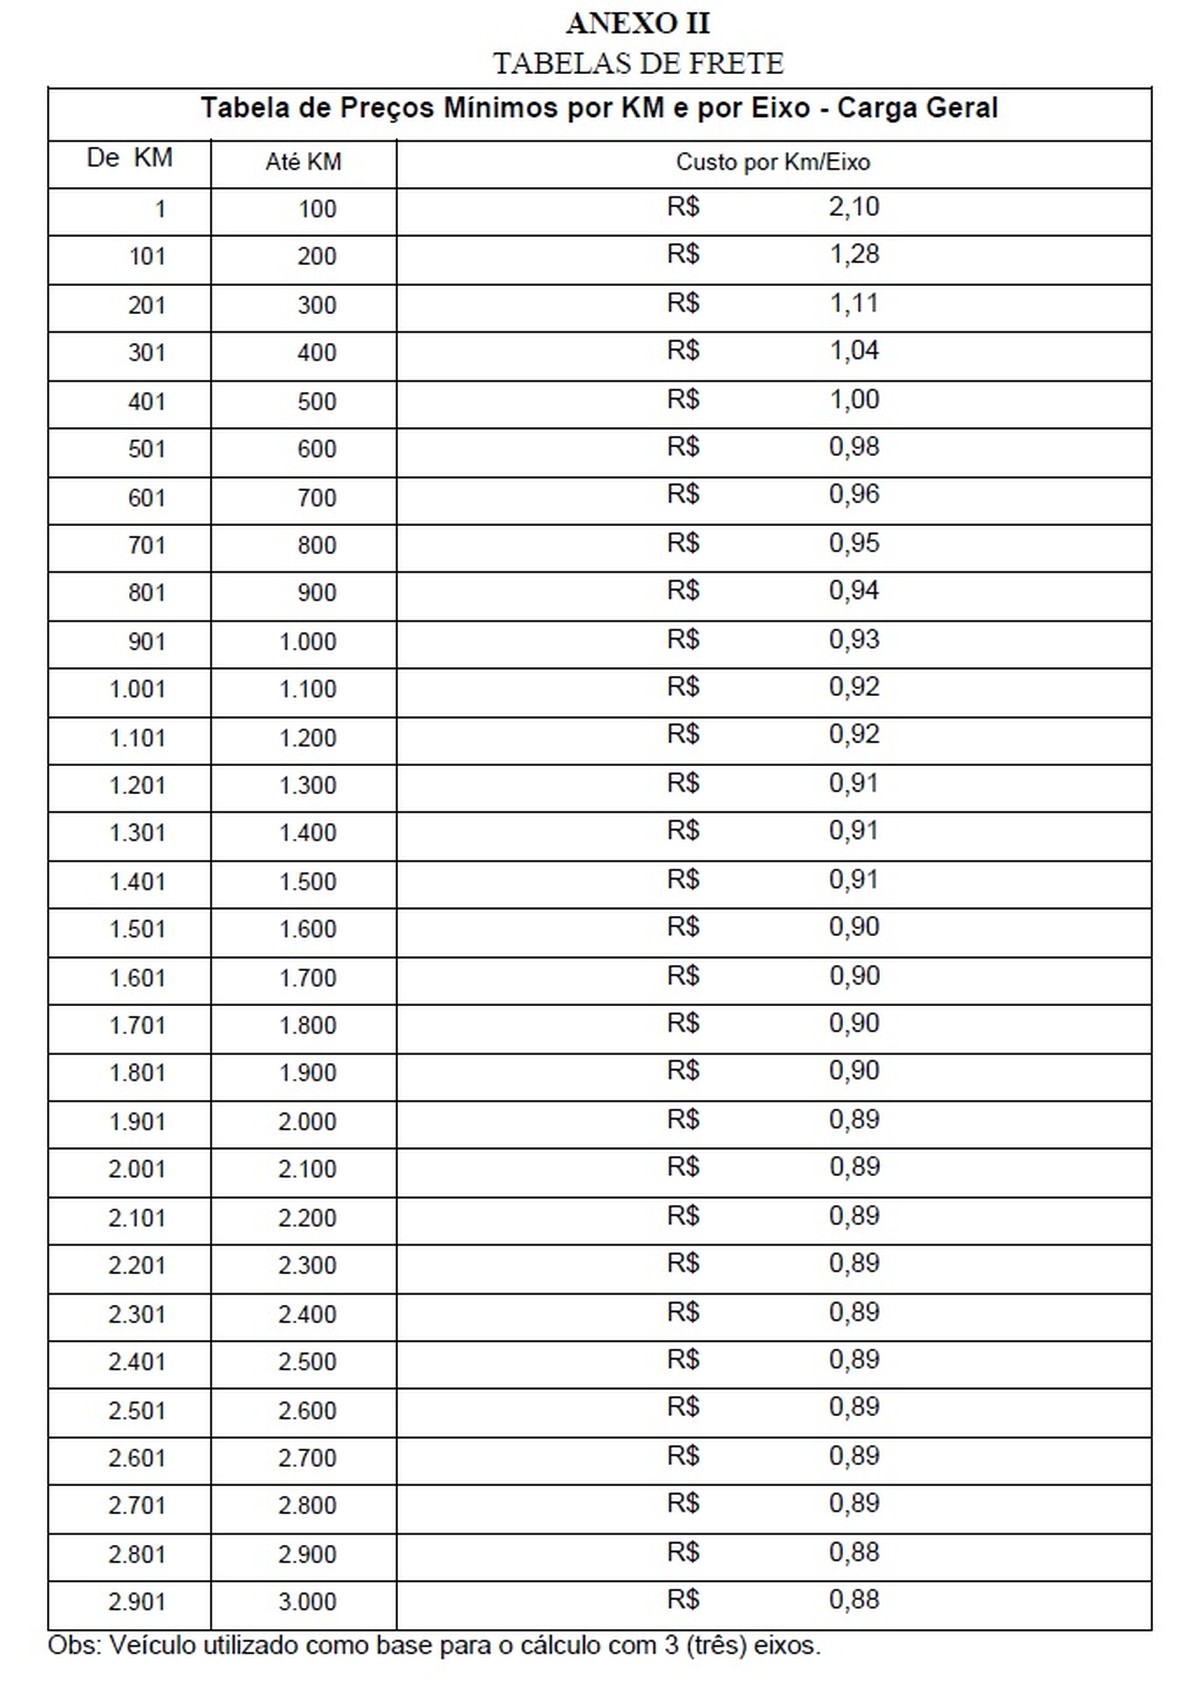 ANTT define tabela com preços mínimos dos fretes; veja valores